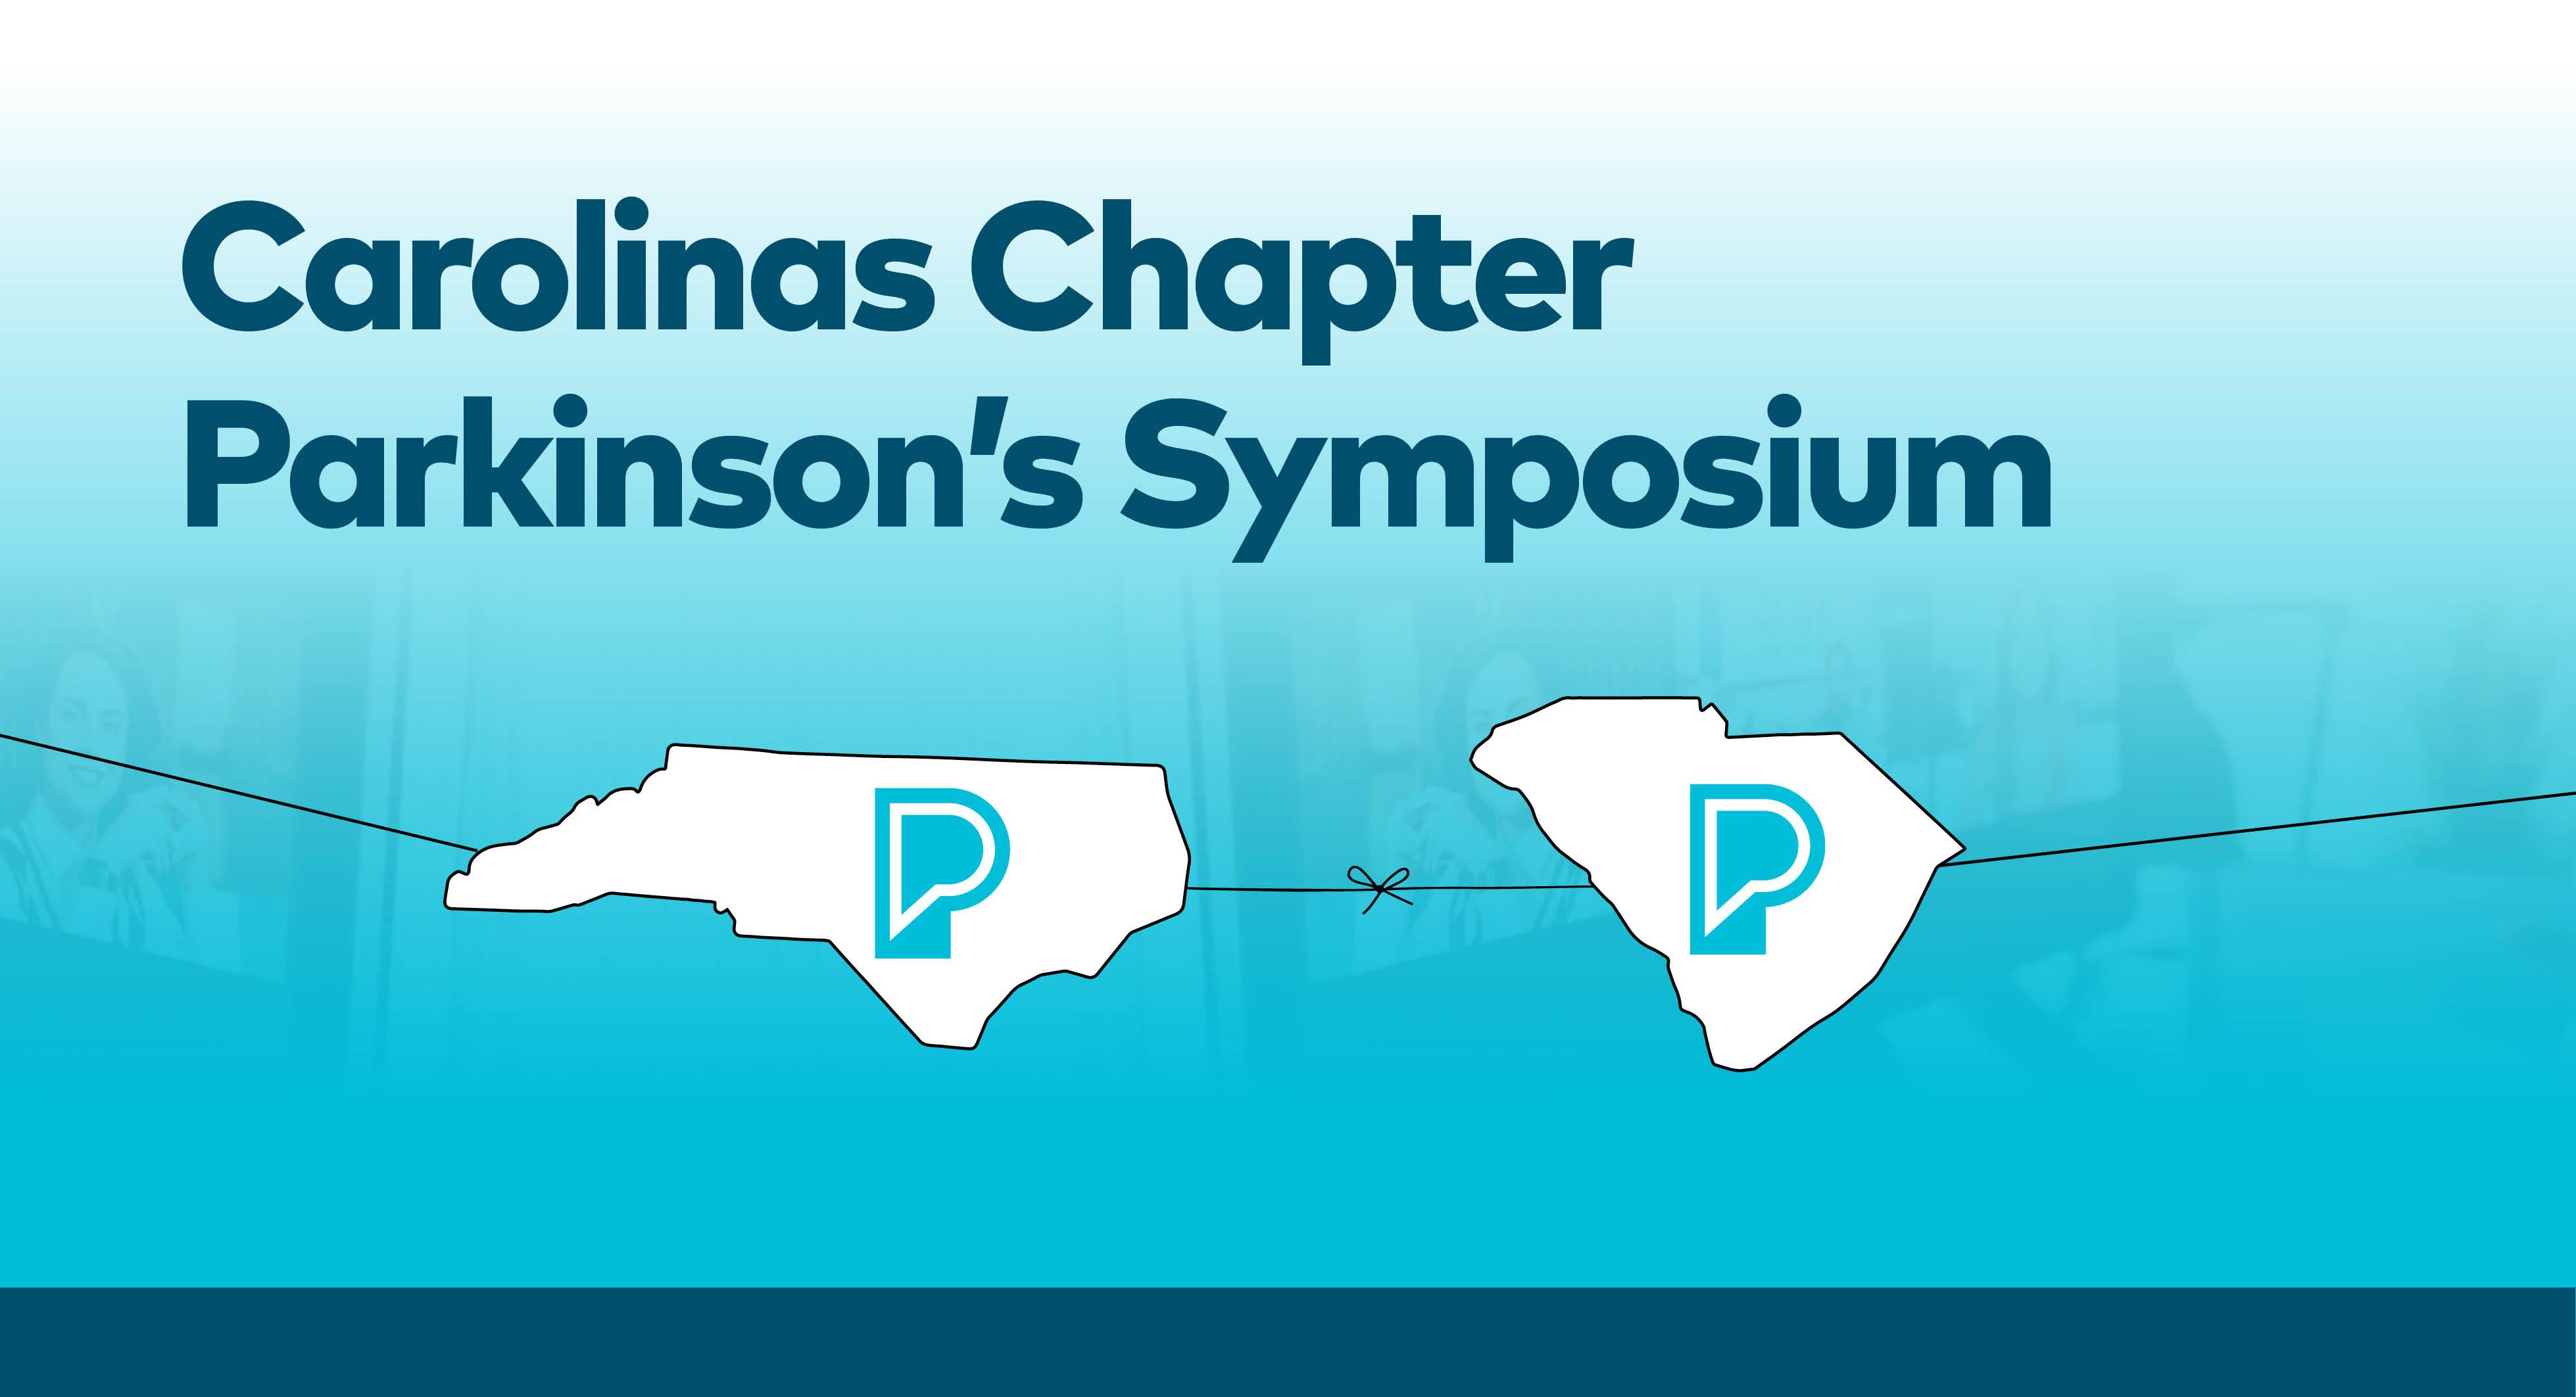 Carolinas Chapter Parkinson's Symposium